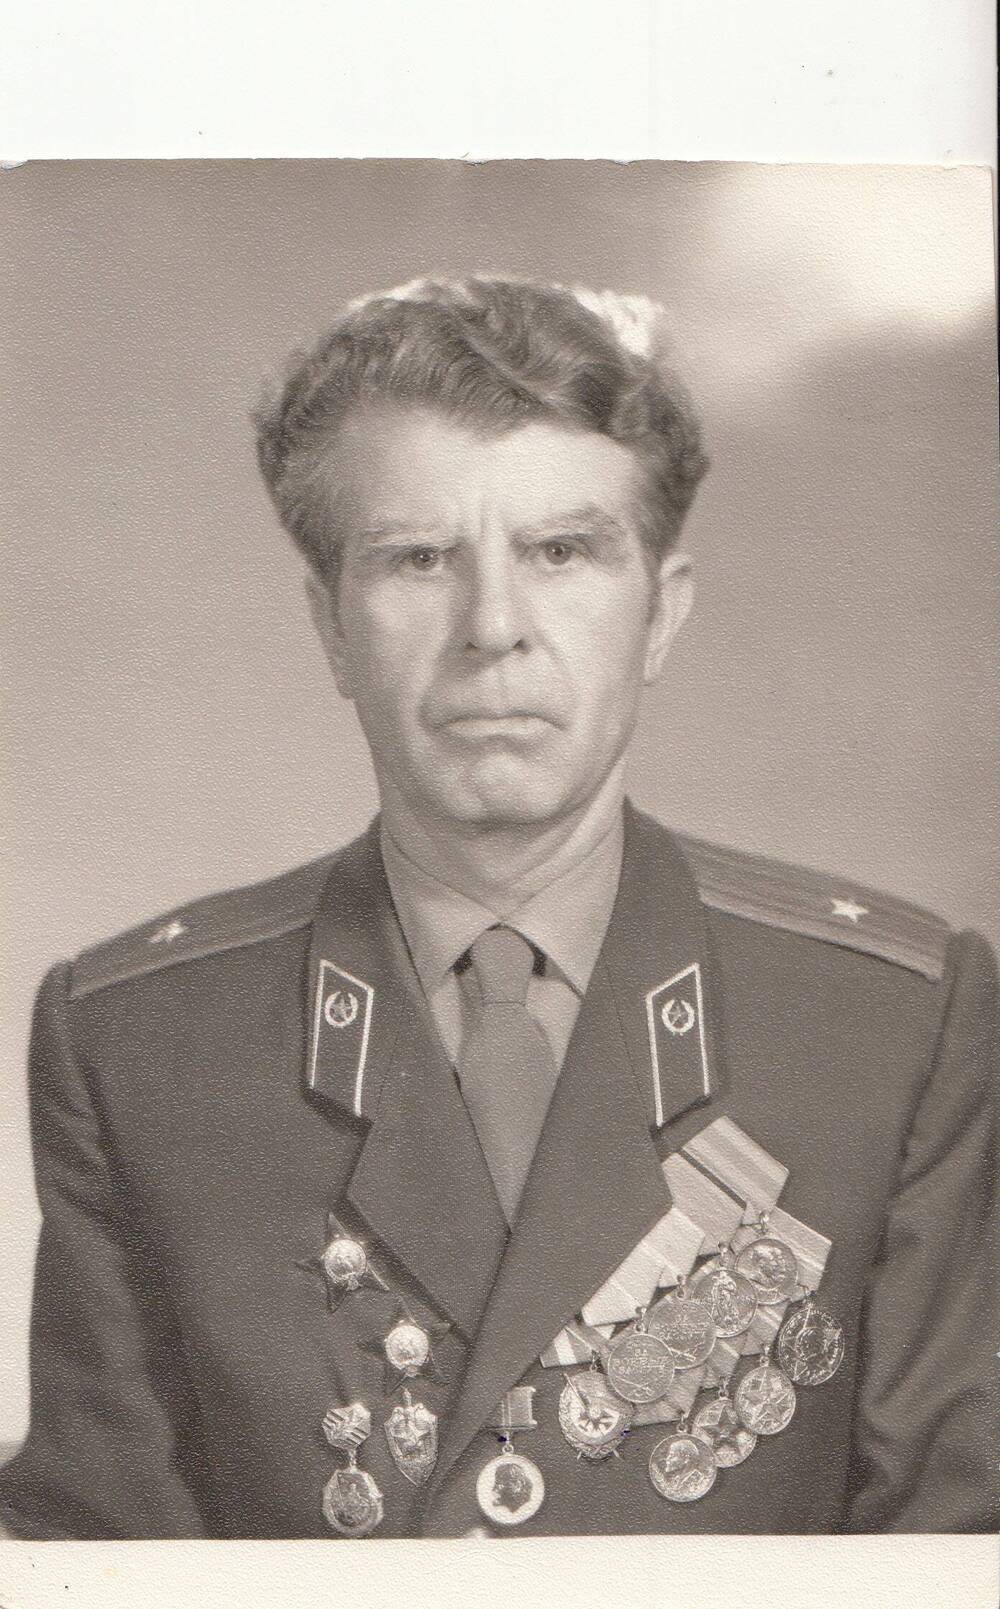 Фотография: Яблоков Василий Александрович, бывший курсант Подольского артиллерийского училища